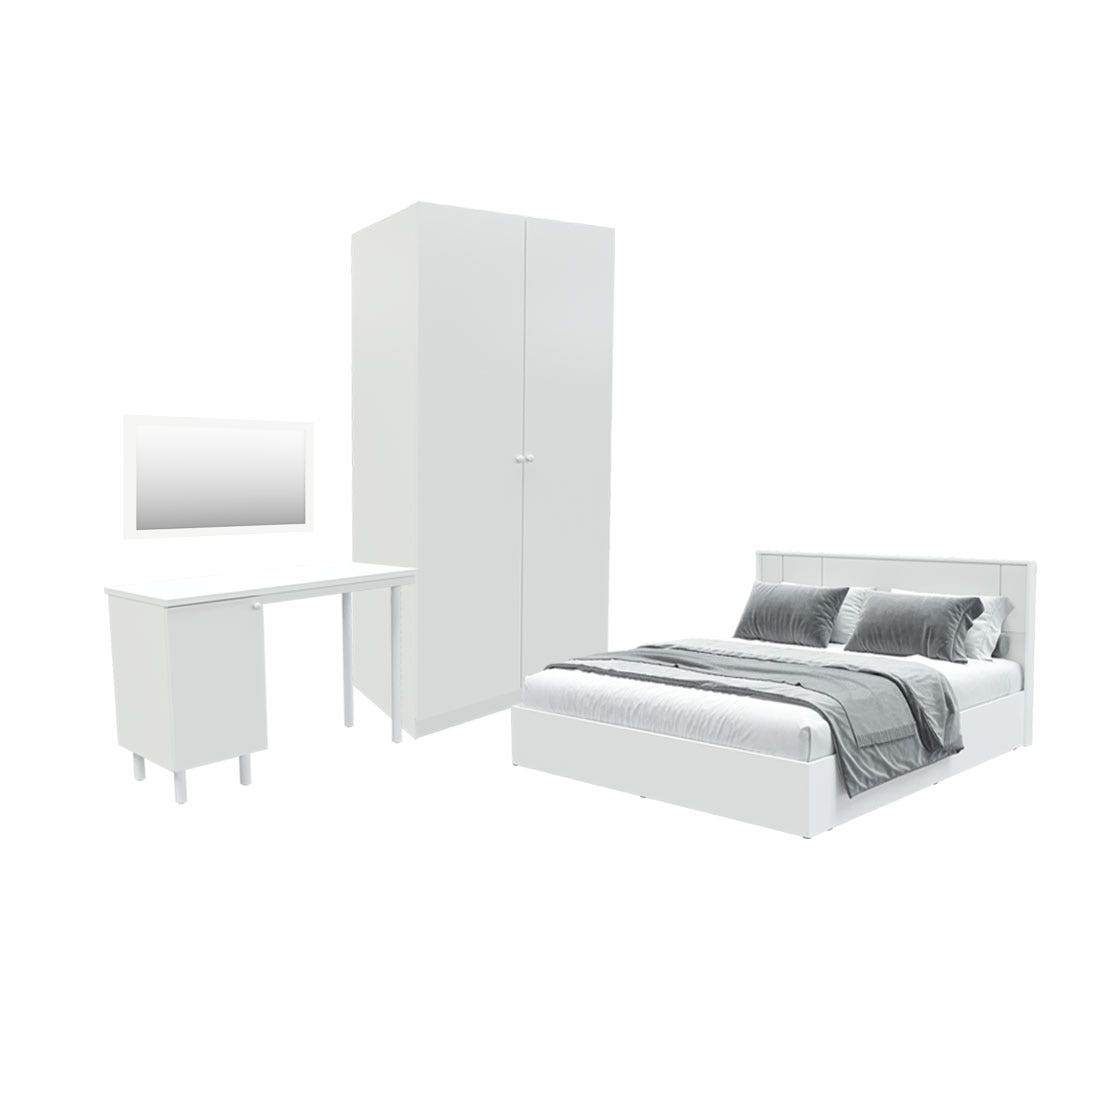 ชุดห้องนอน ขนาด 6 ฟุต รุ่น Pearliz และ ตู้ Blox ขนาด 100 ซม. พร้อมโต๊ะทำงาน สีขาว มิดกรอส01